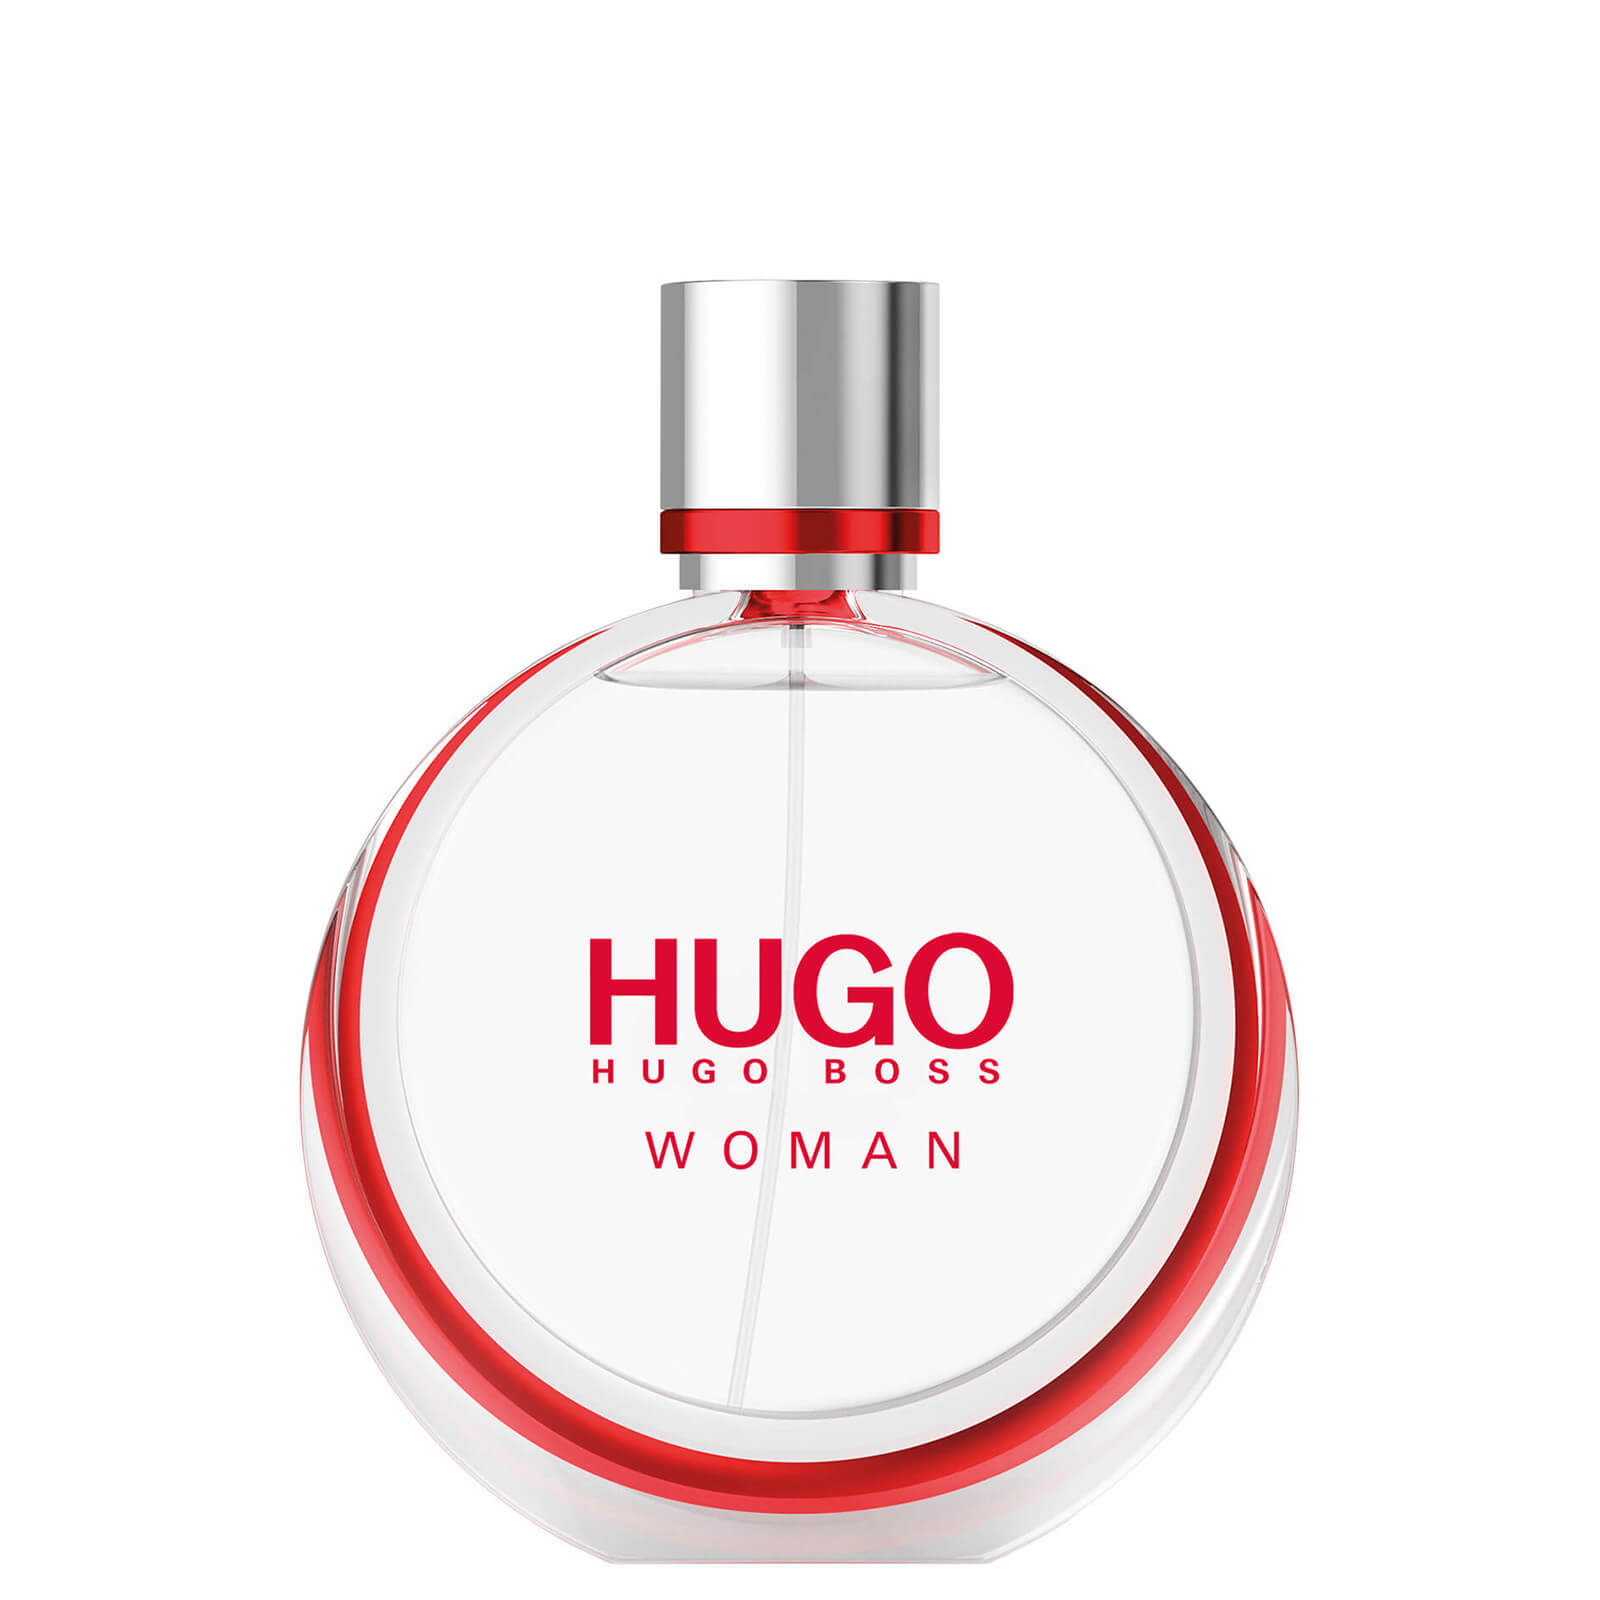 Image of Hugo Boss HUGO Woman Eau de Parfum Spray 50ml